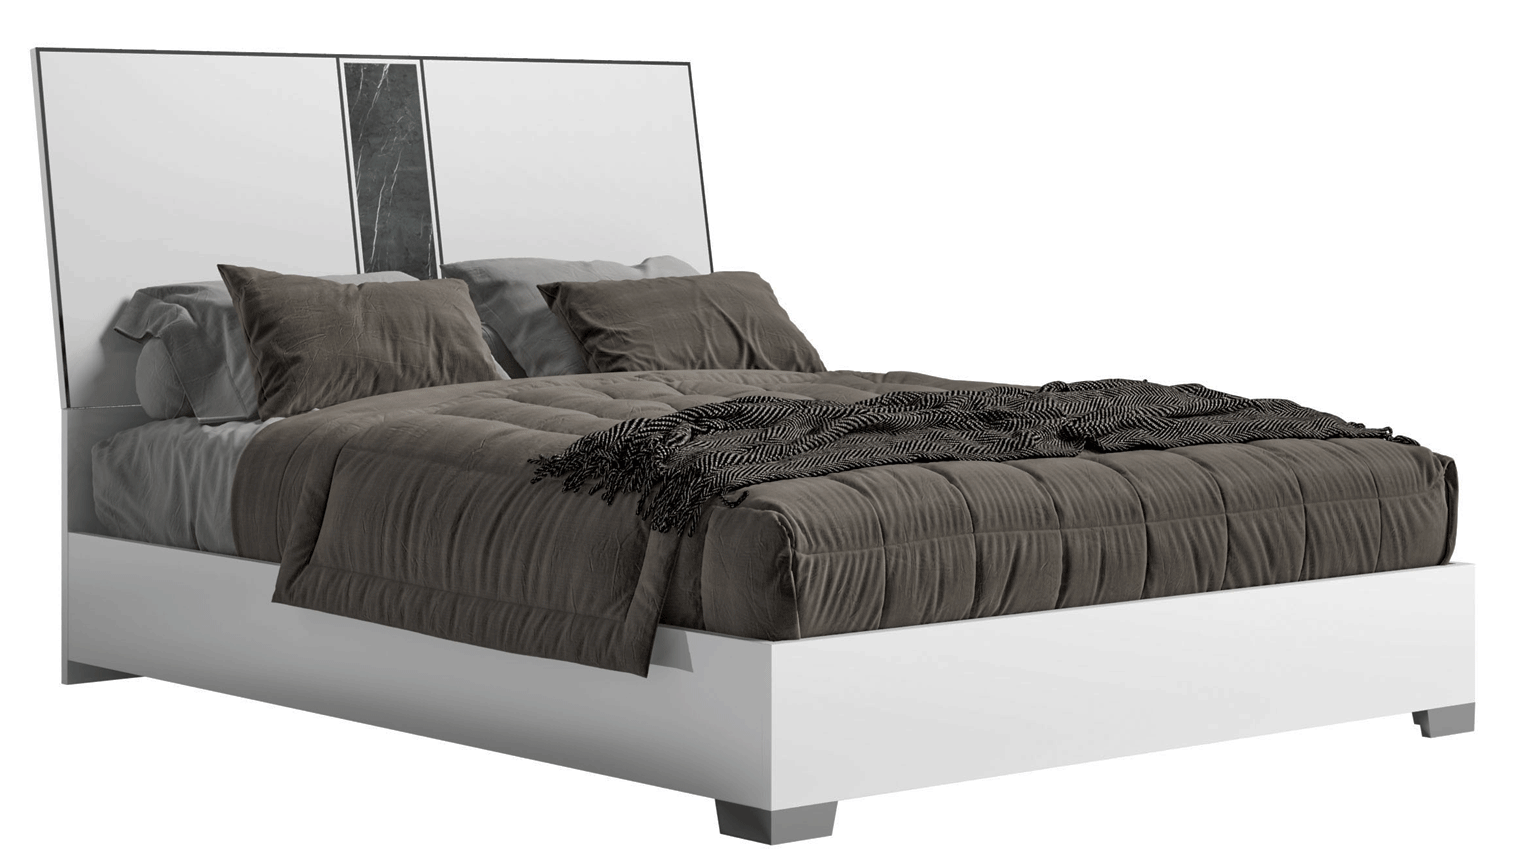 Bedroom Furniture Nightstands Bianca Marble Bed